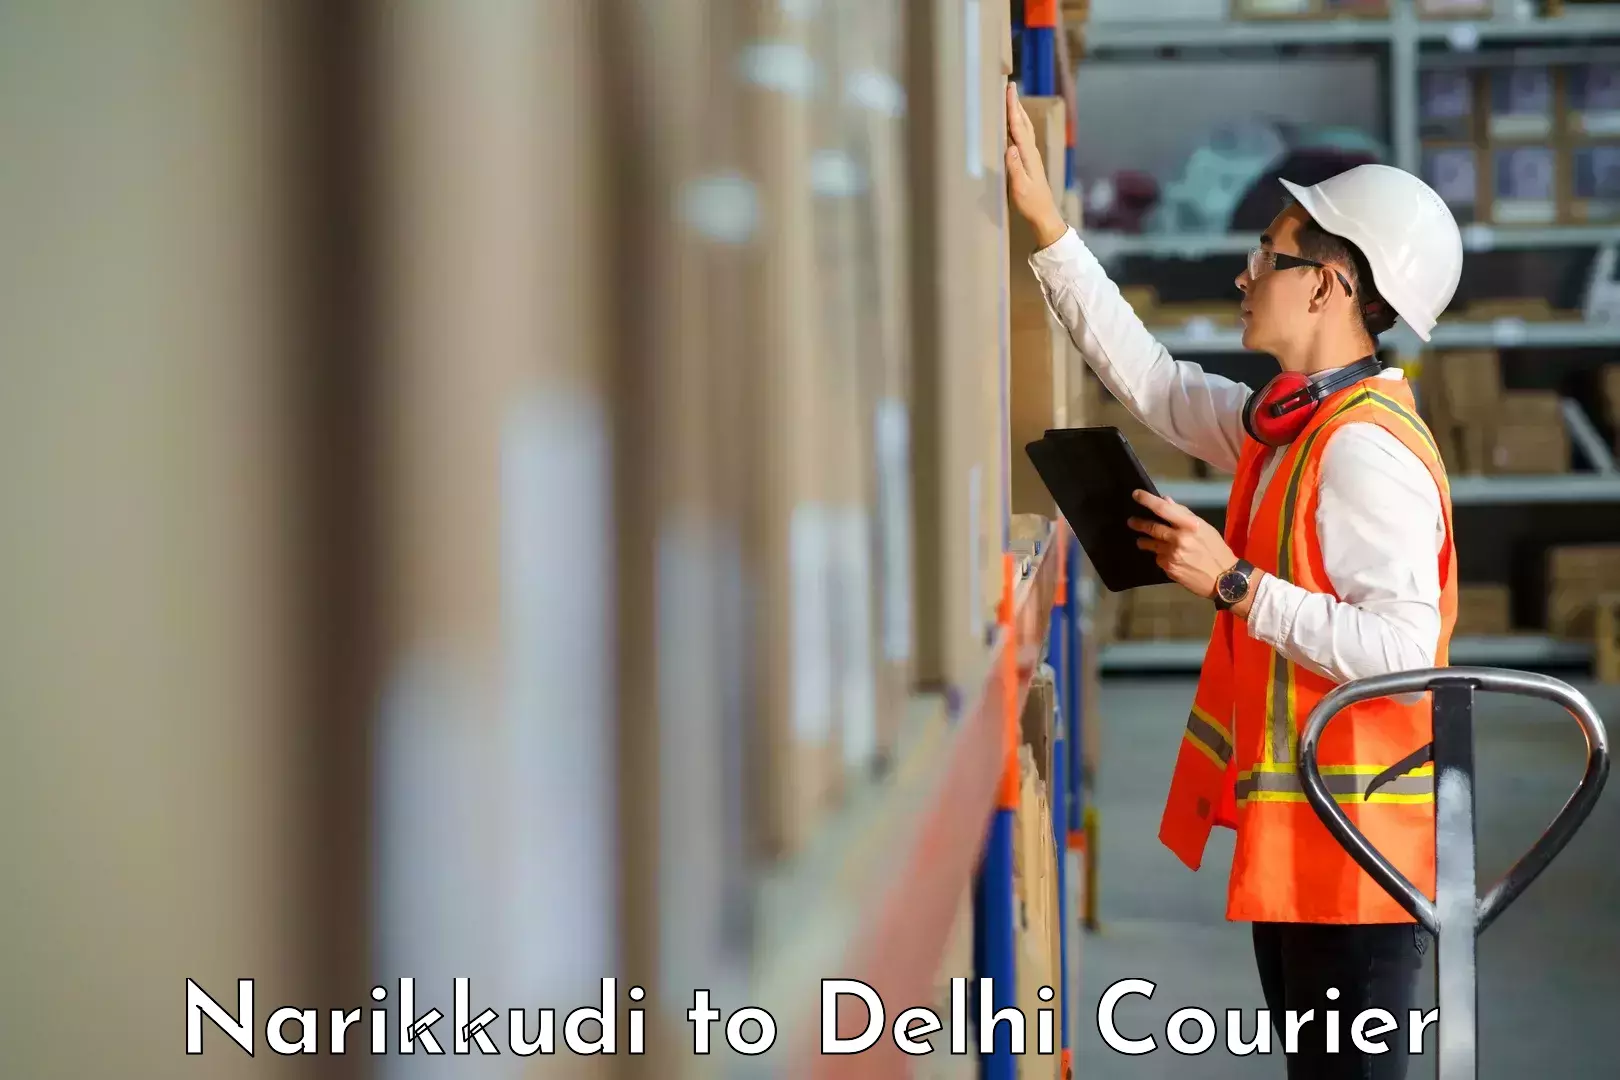 Courier service comparison Narikkudi to Jamia Millia Islamia New Delhi